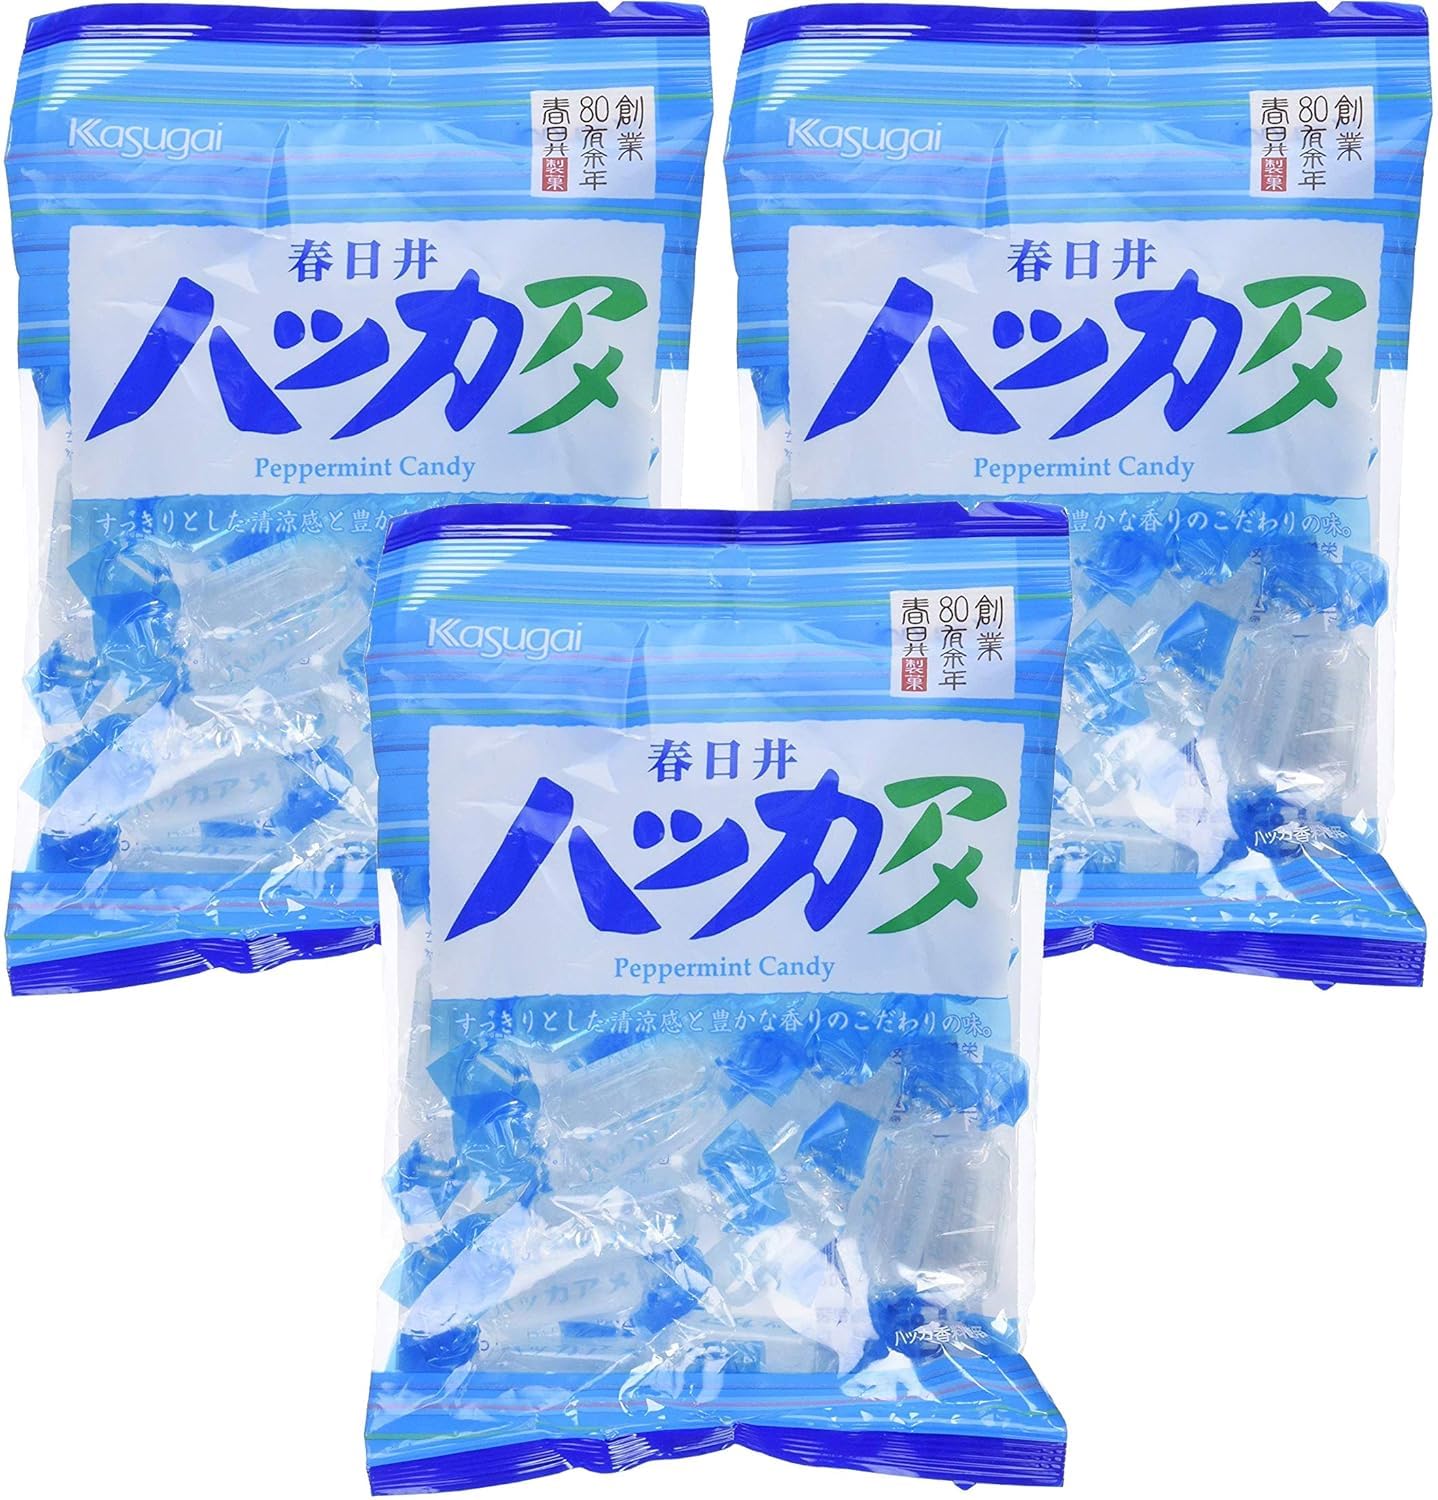 Kasugai Japanese Peppermint Candy (Hakka Ame) | (5.19oz) (3pack)